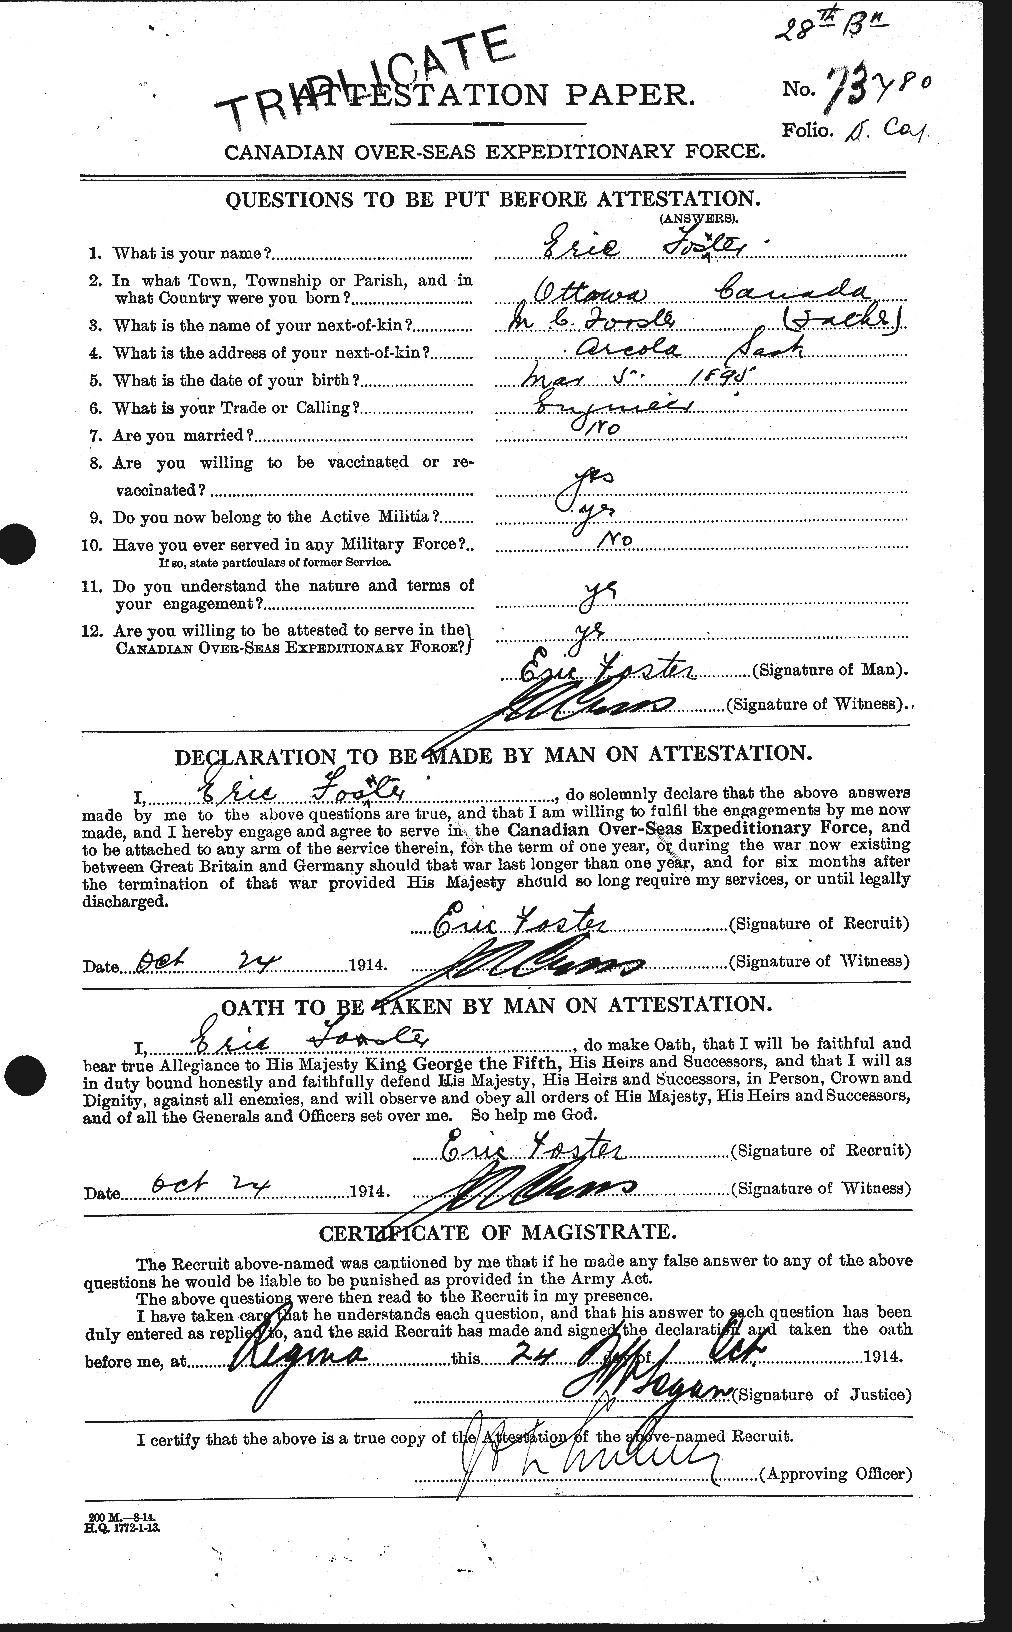 Dossiers du Personnel de la Première Guerre mondiale - CEC 330598a